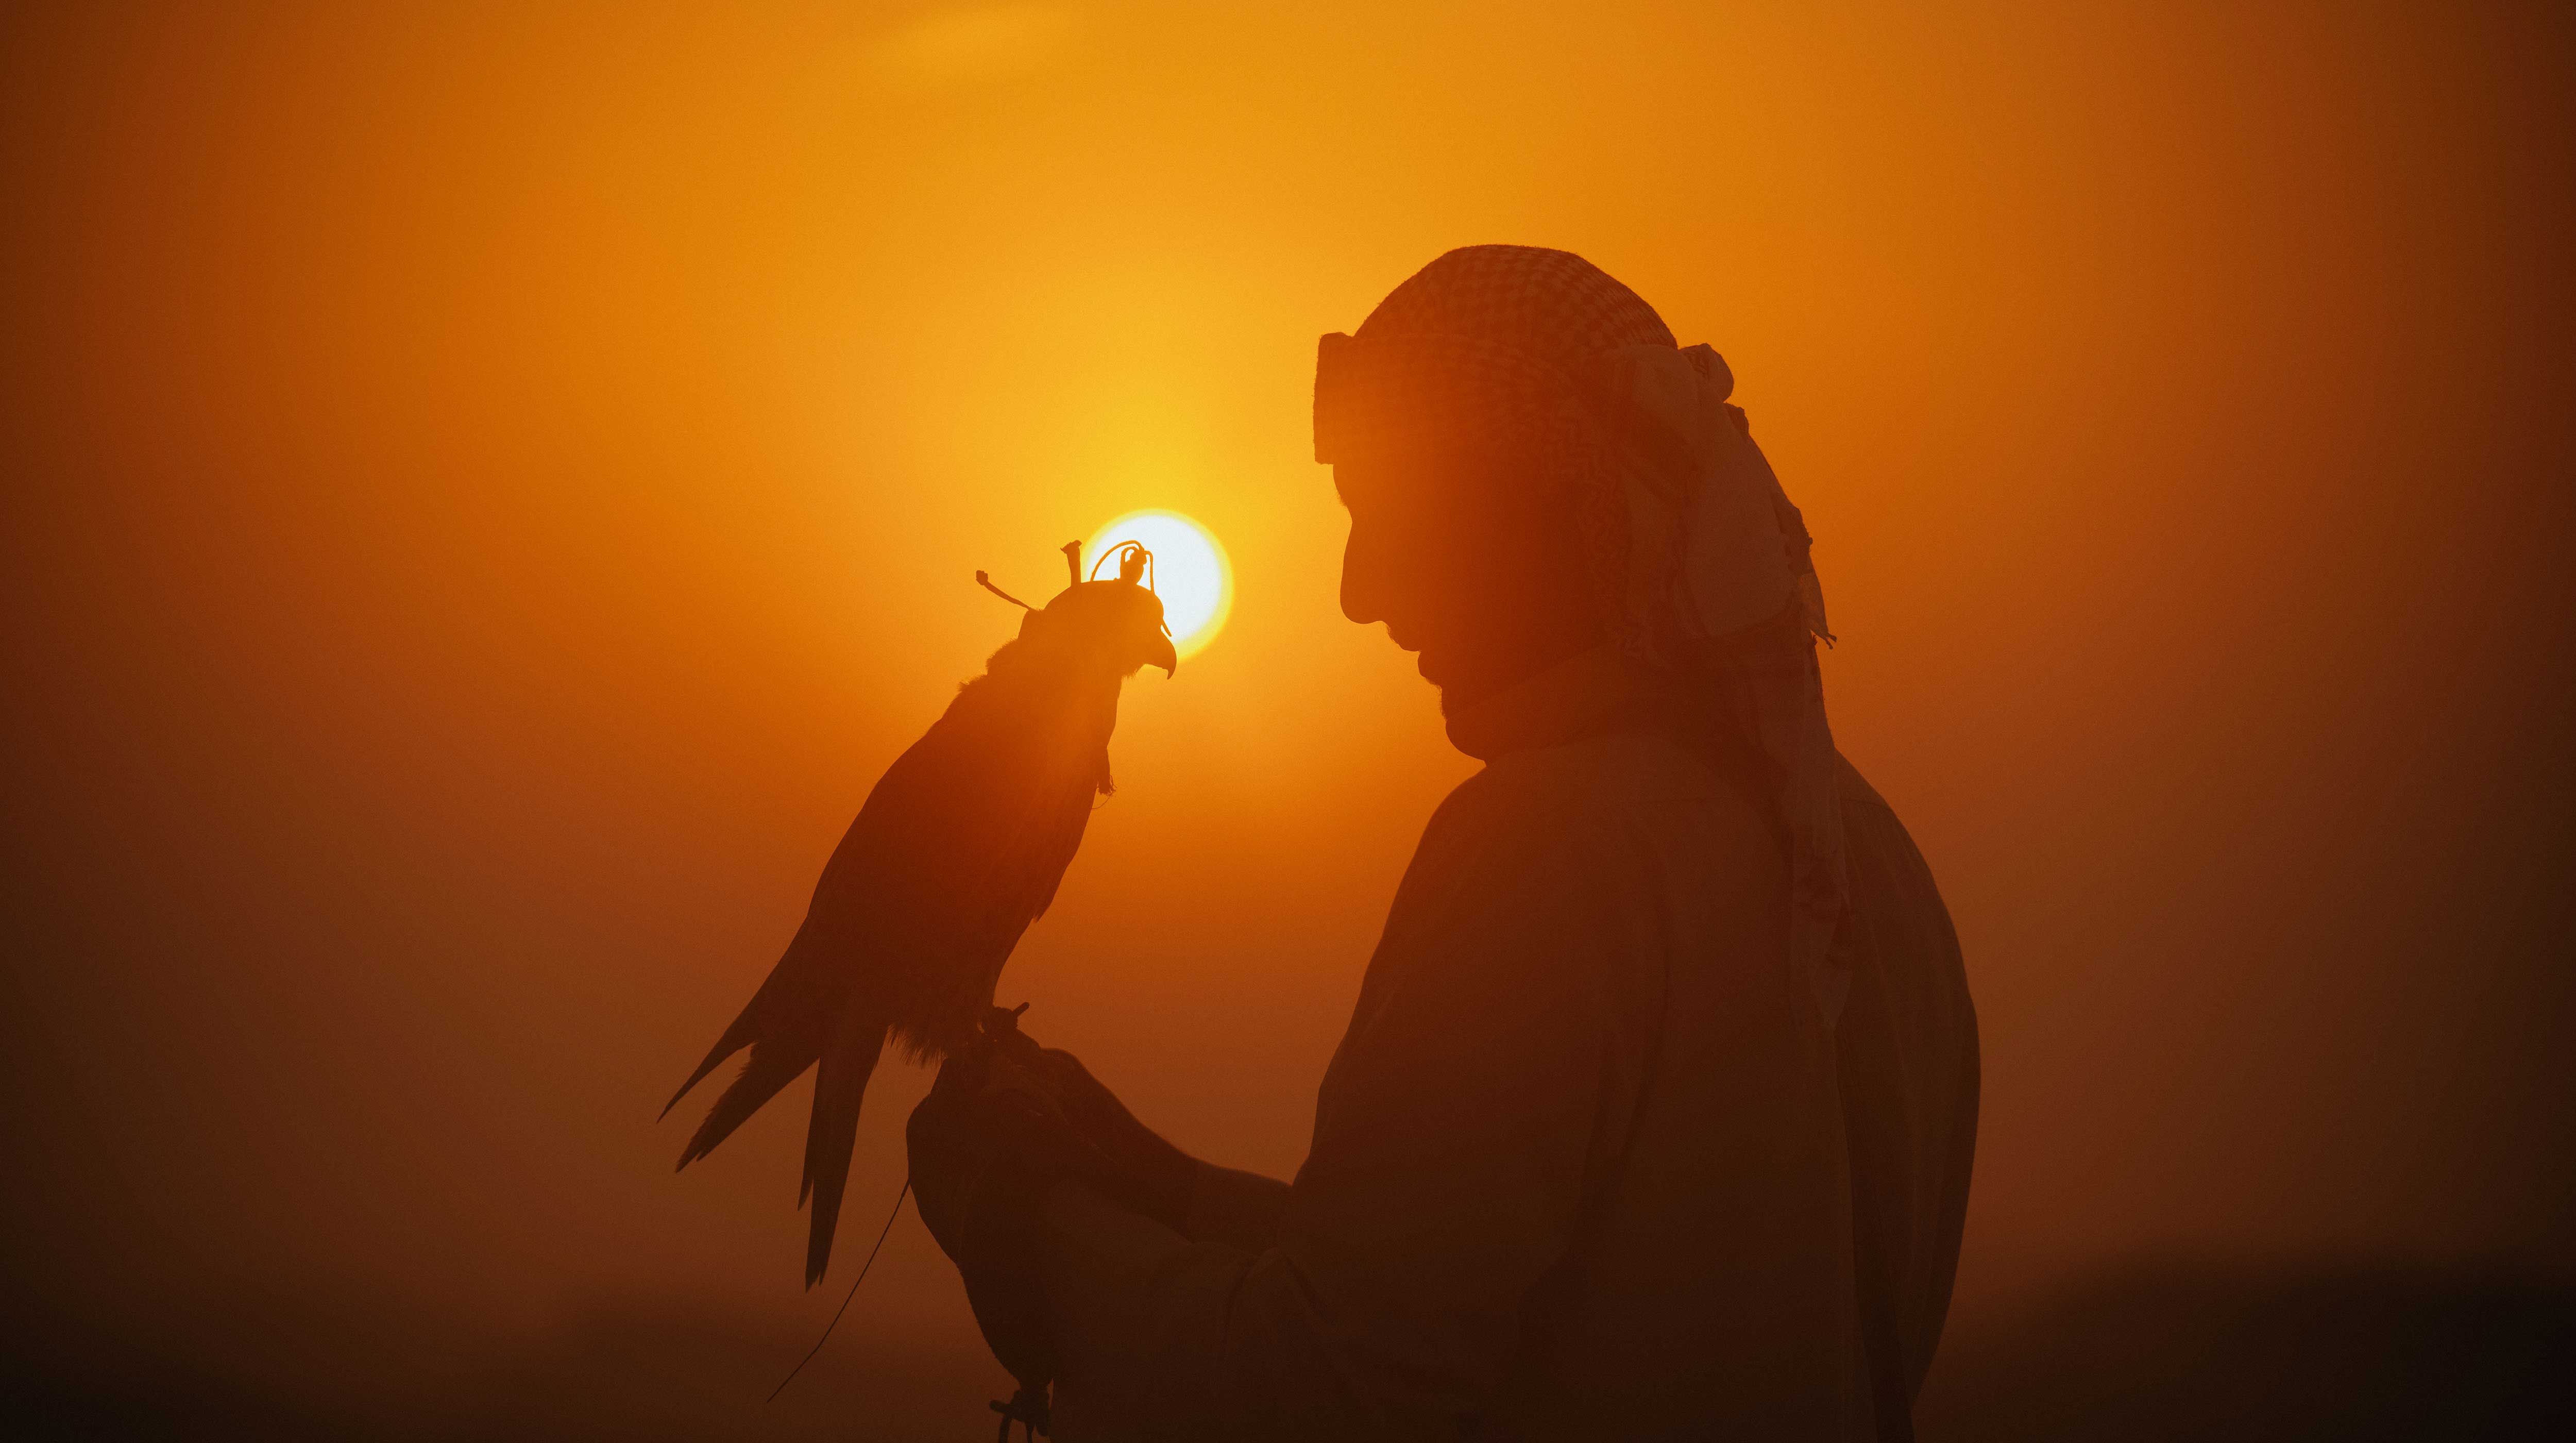 Ein Mann in einer traditionellen arabischen Kopfbedeckung hält einen Falken, während die Sonne im Hintergrund untergeht